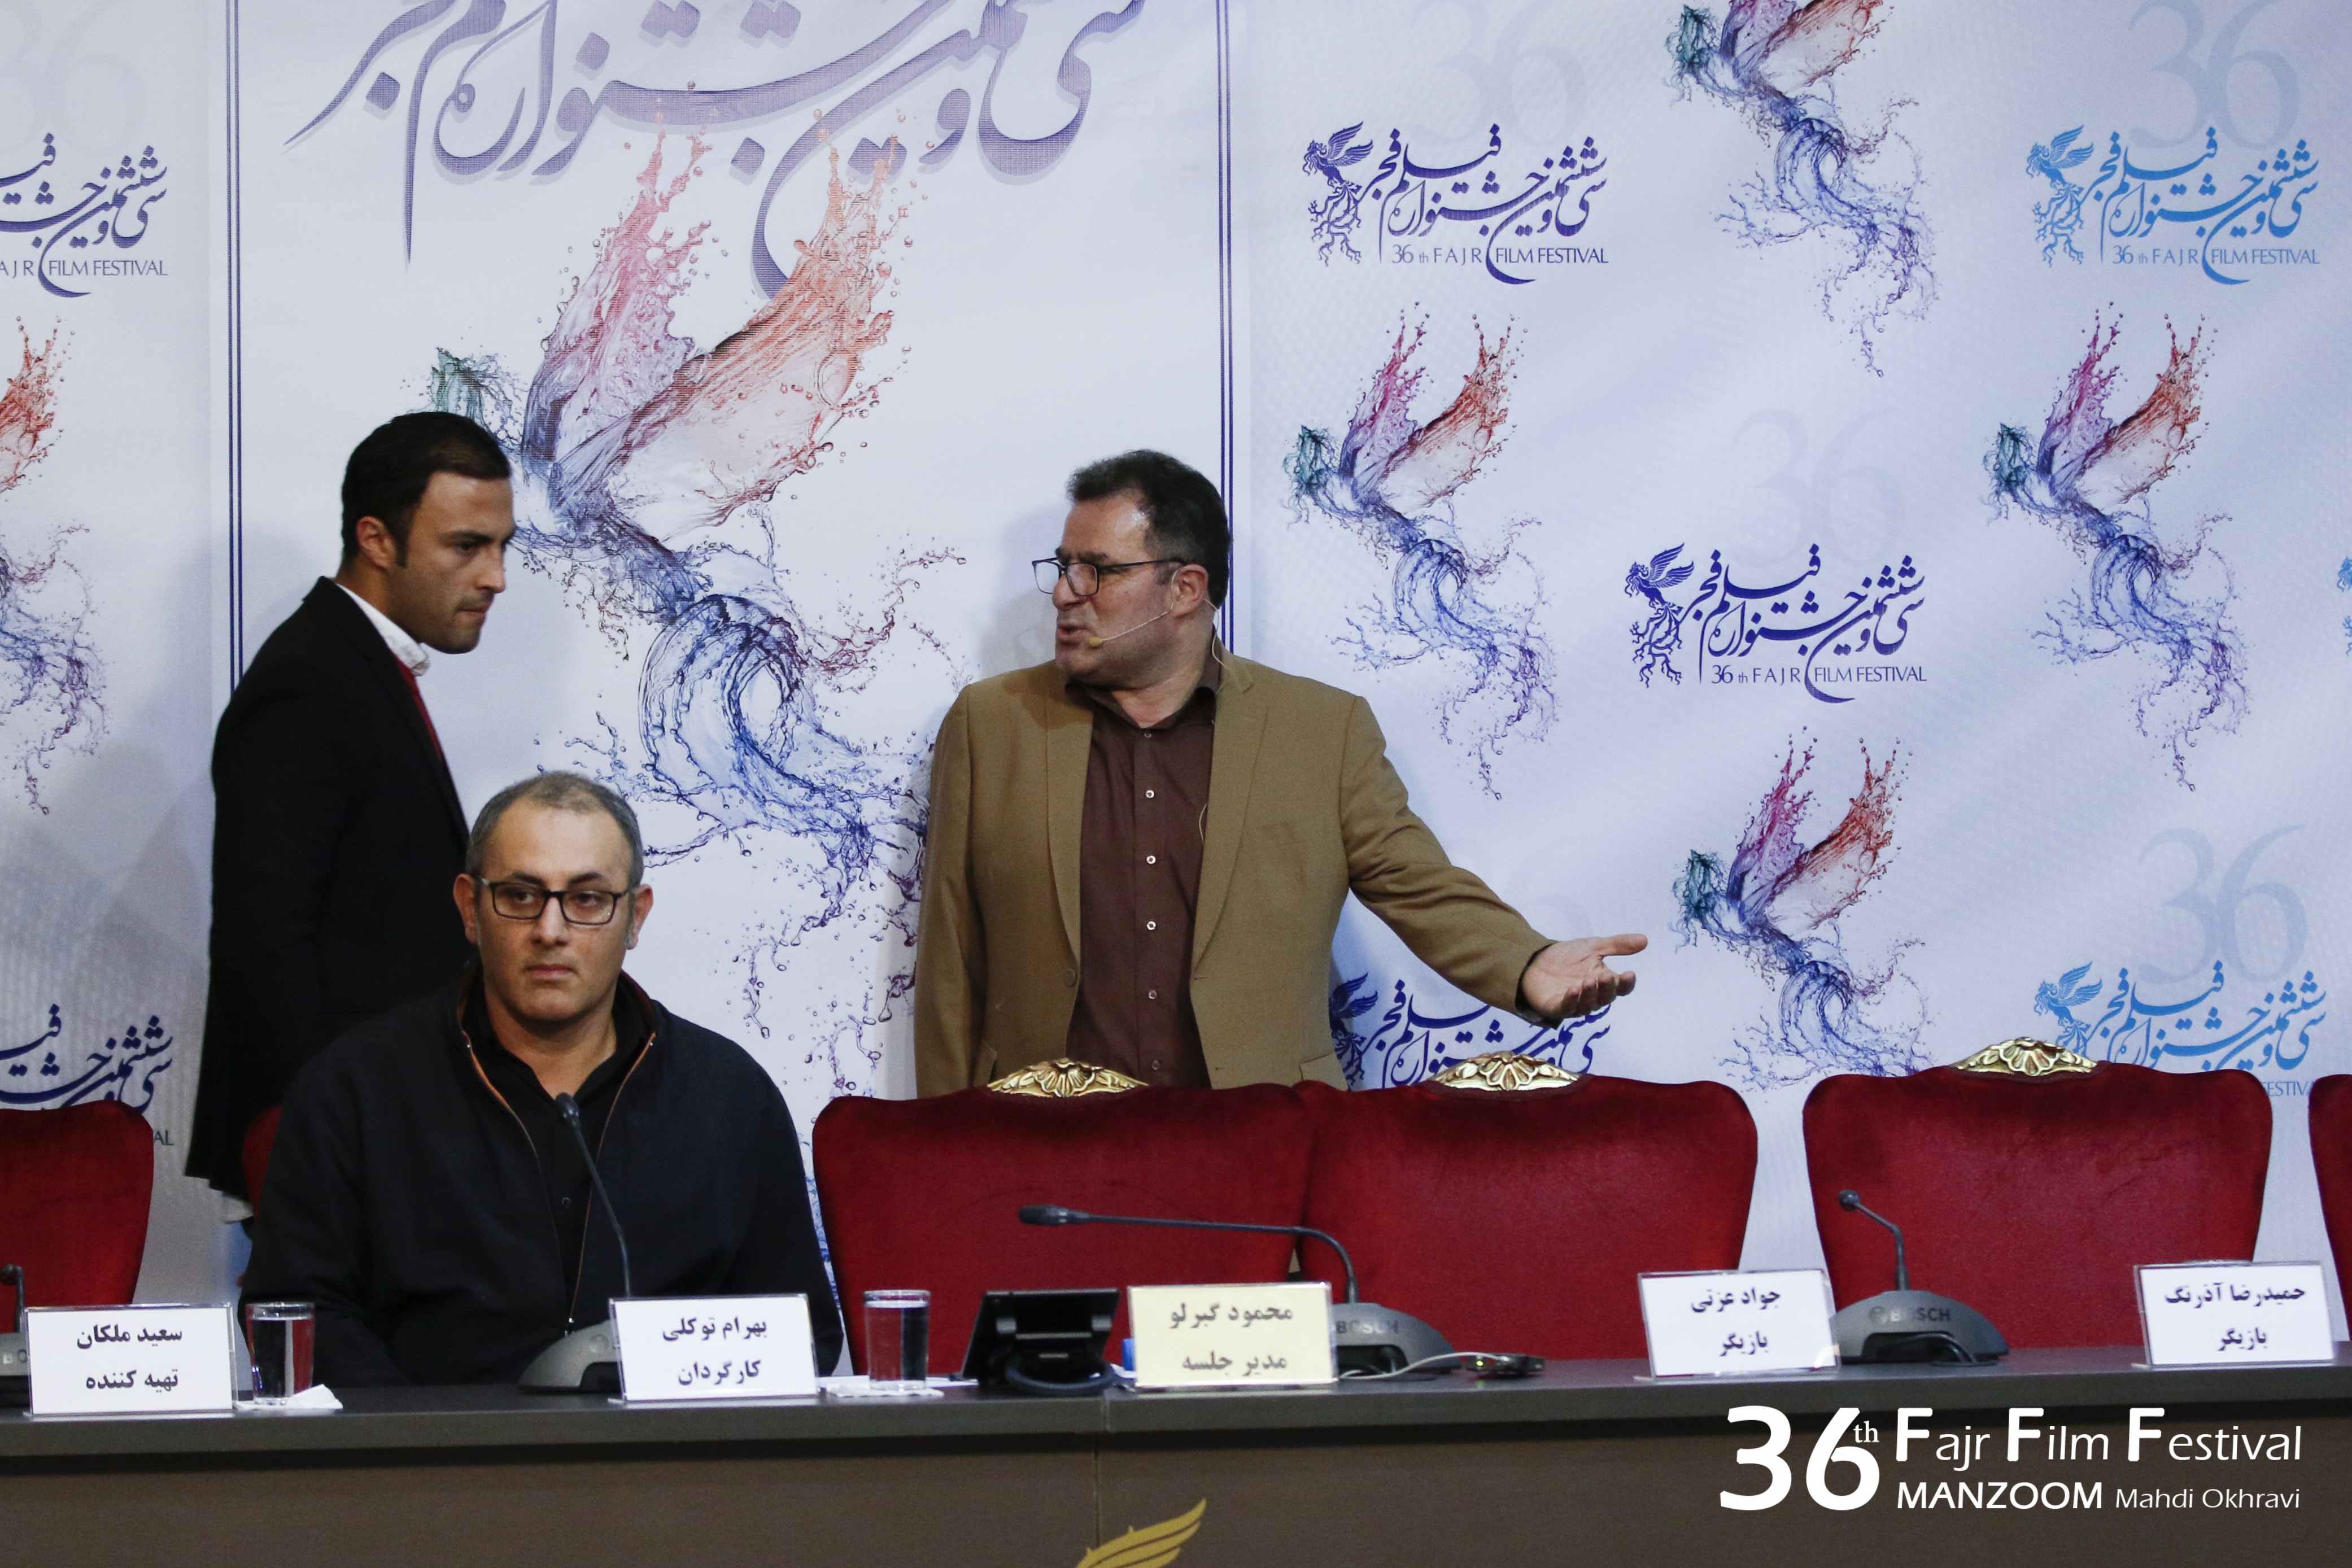 نشست خبری فیلم سینمایی تنگه ابوقریب با حضور بهرام توکلی، امیر جدیدی و محمود گبرلو